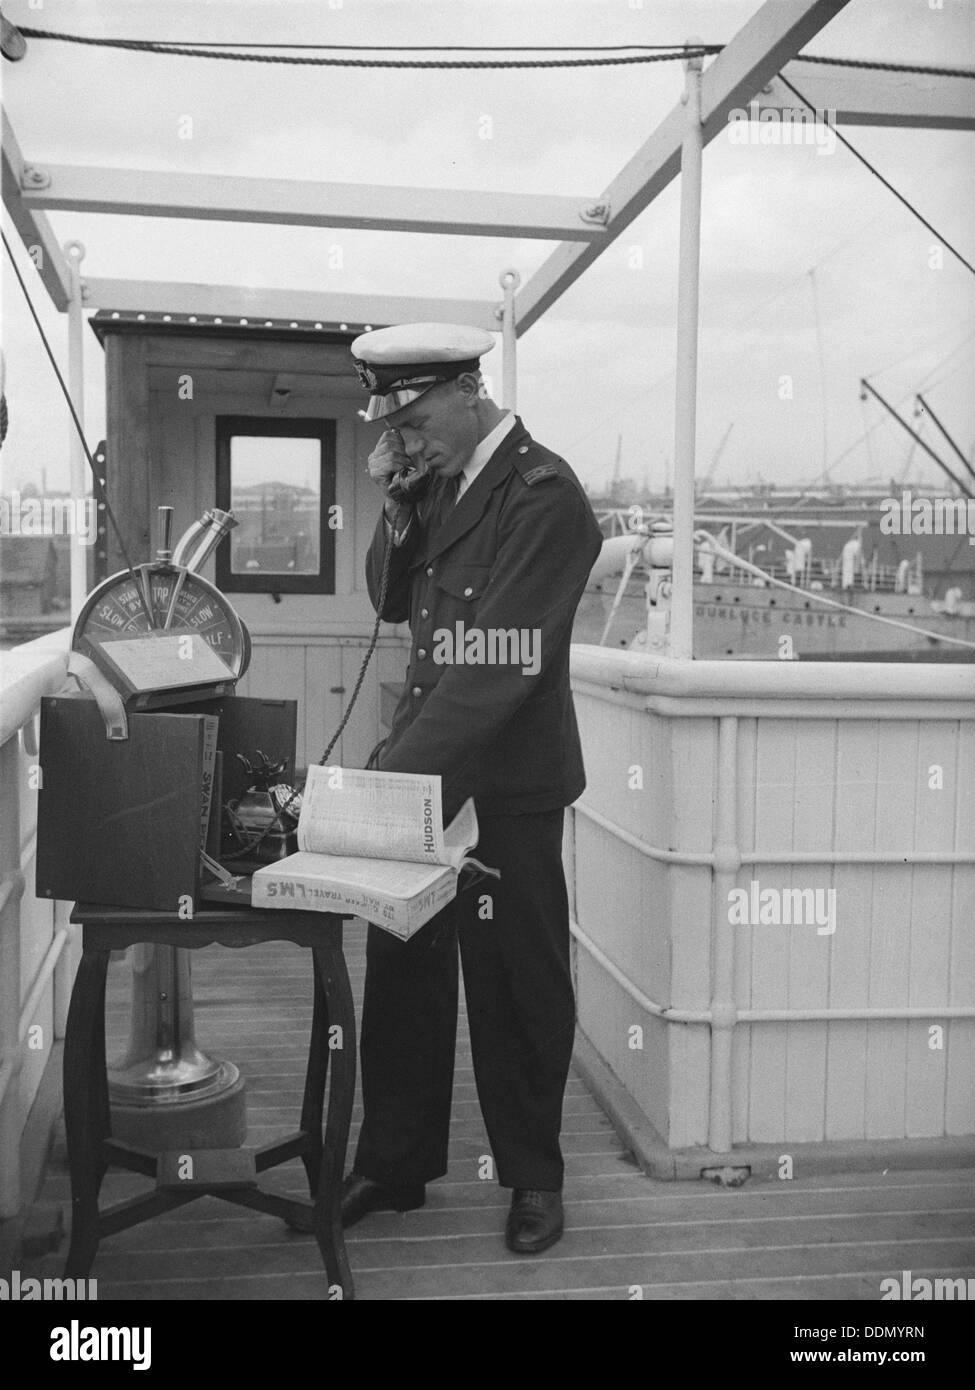 Un ufficiale della nave sul ponte utilizza un telefono portatile collegato ad una linea di terra, C1945-c1965. Artista: SW Rawlings Foto Stock